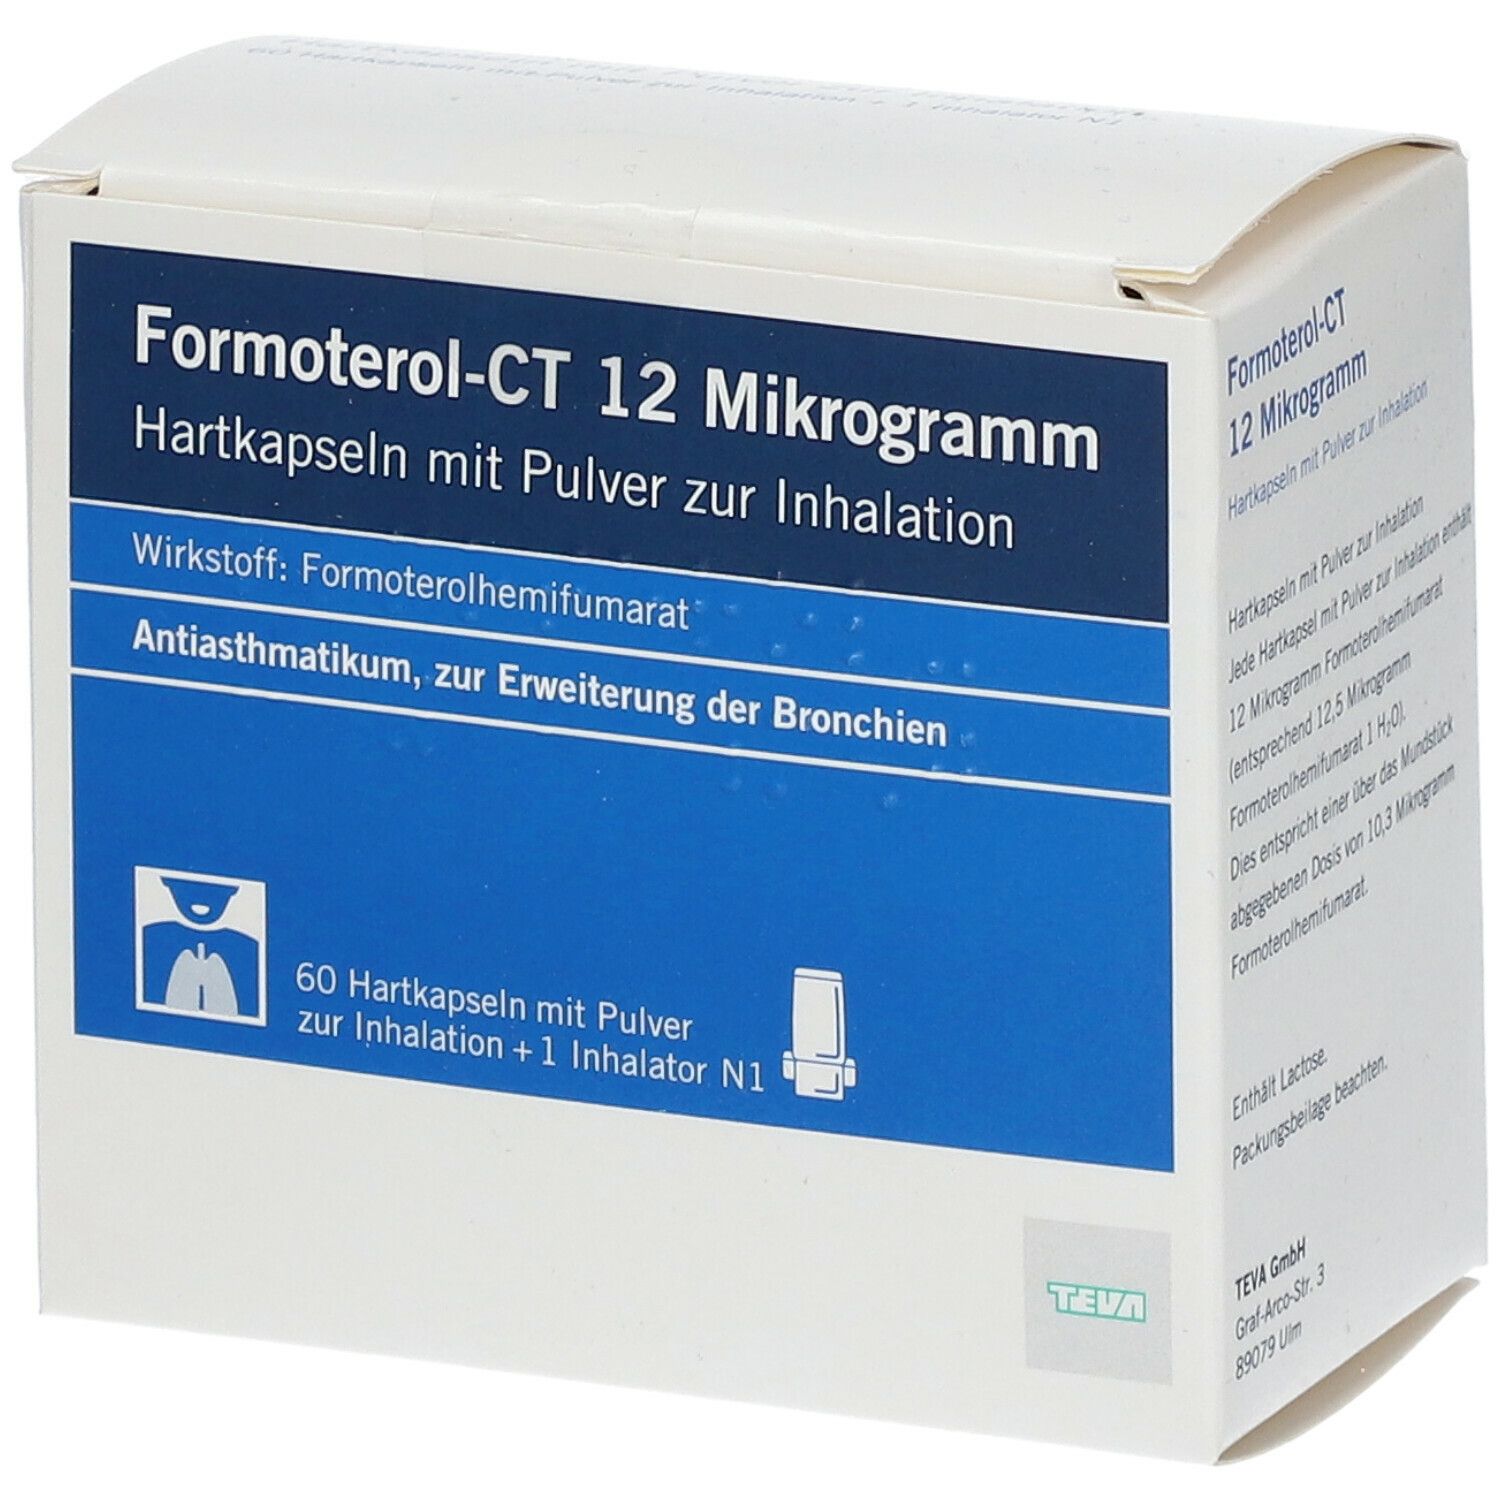 Formoterol-CT 12 µg 180 St mit dem E-Rezept kaufen - SHOP APOTHEKE